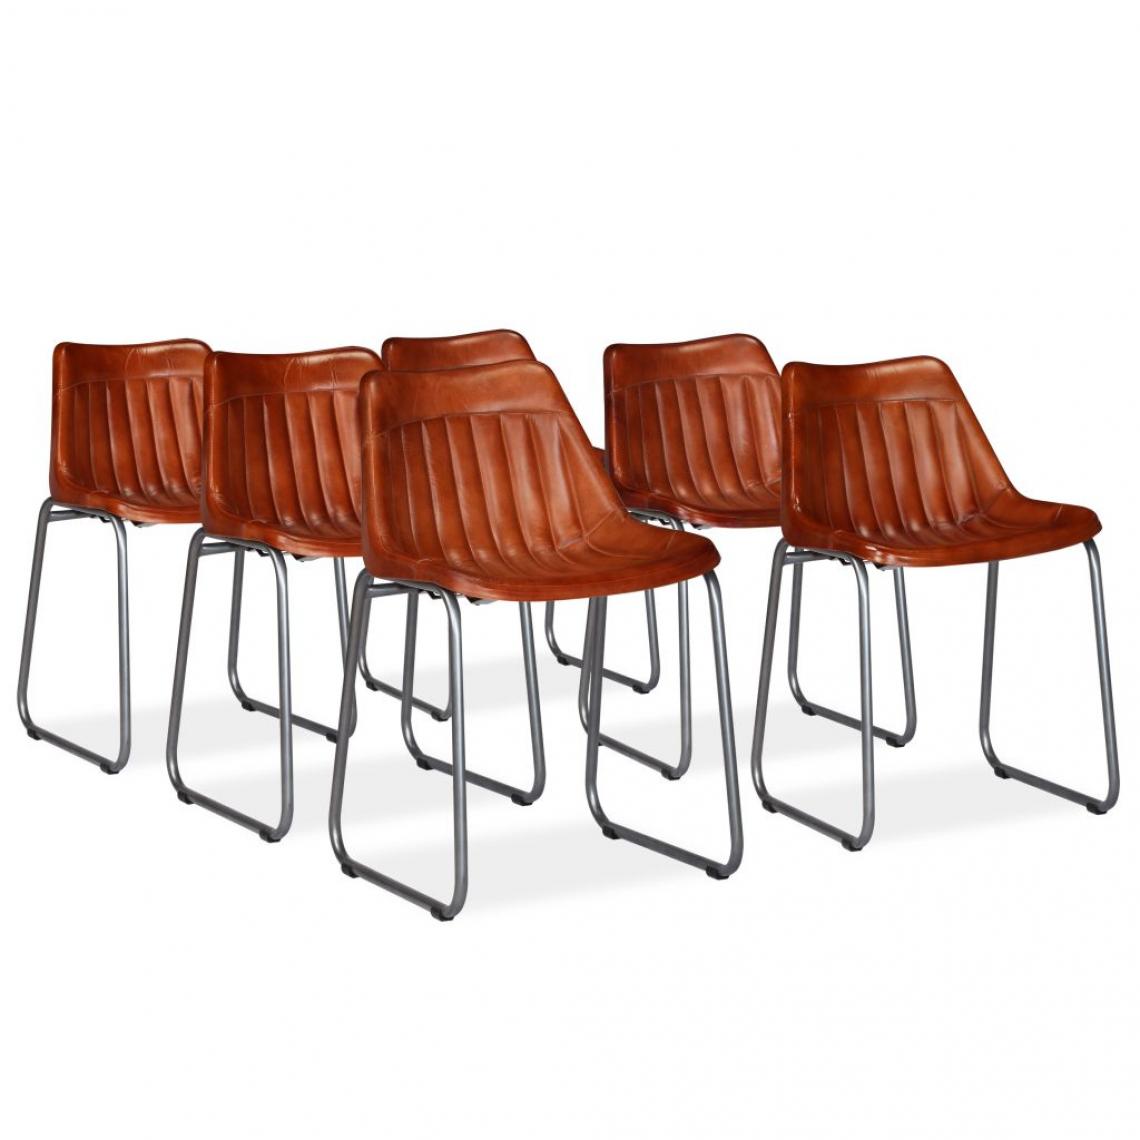 Decoshop26 - Lot de 6 chaises de salle à manger cuisine design vintage cuir véritable marron CDS022568 - Chaises